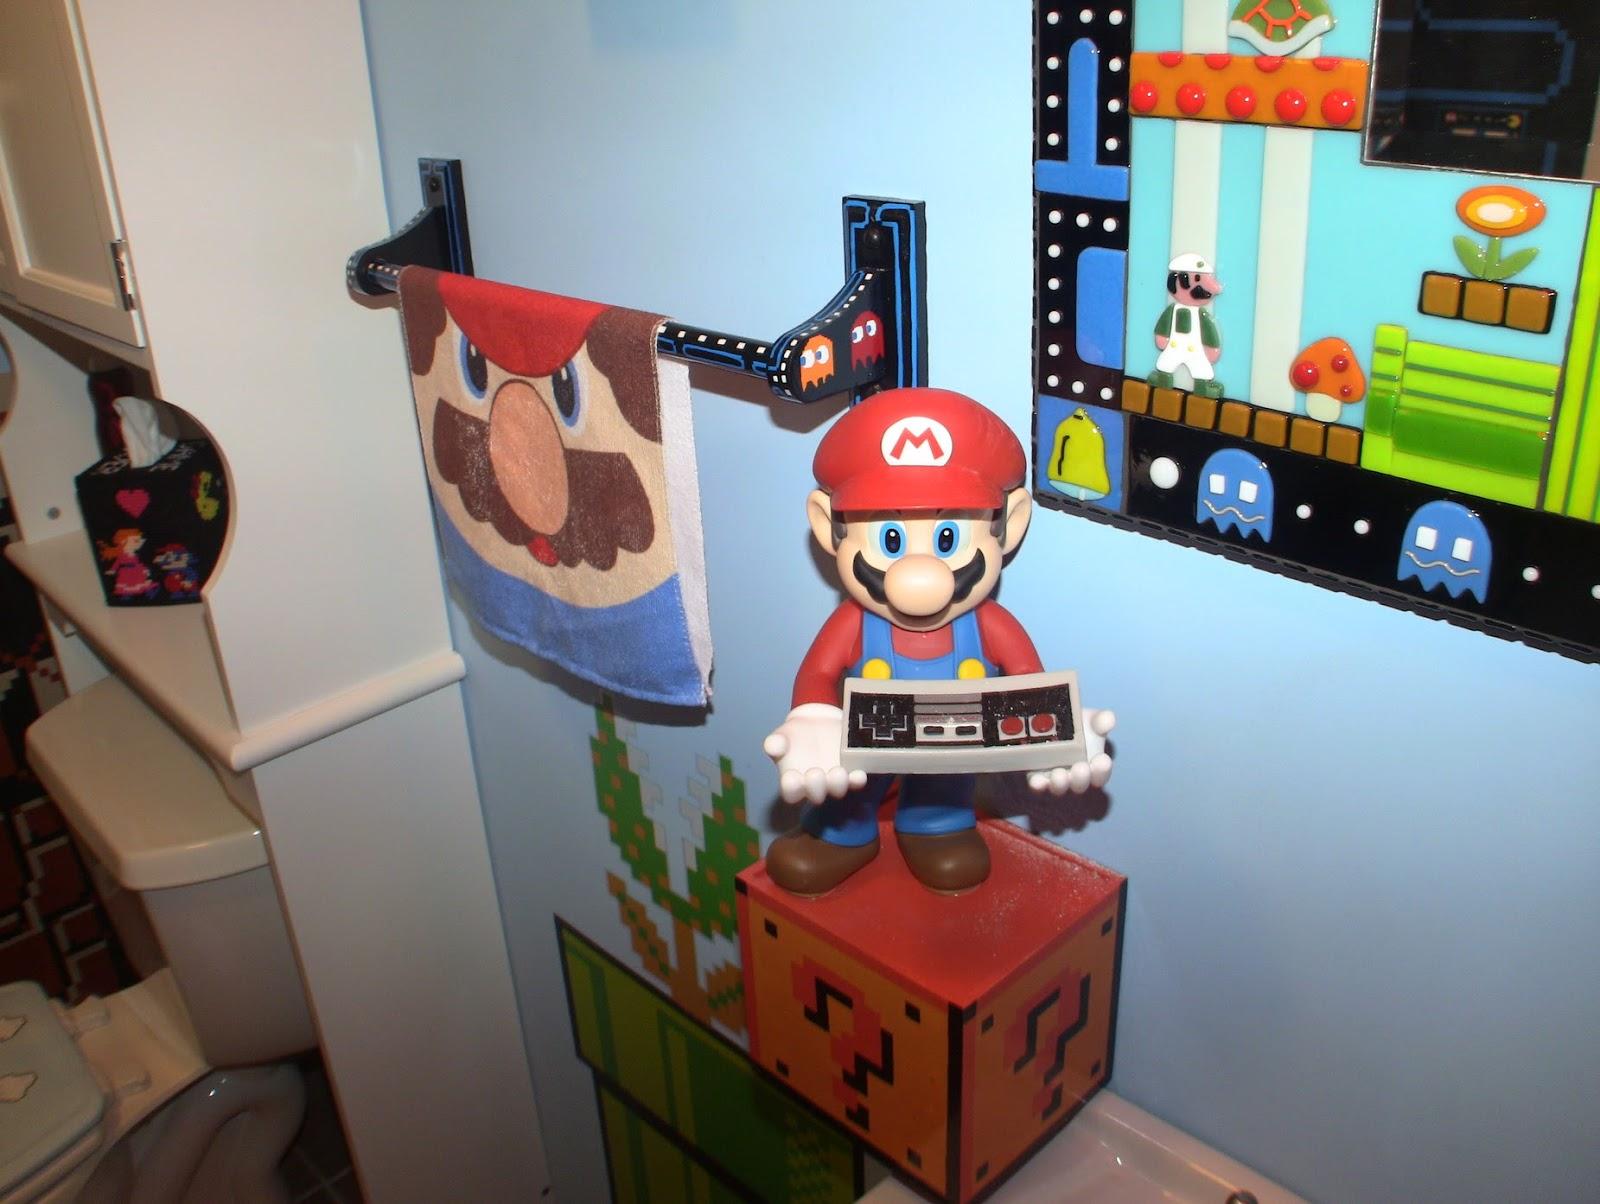 La salle de bains Nintendo: l'idéal pour rétro-Gamer?